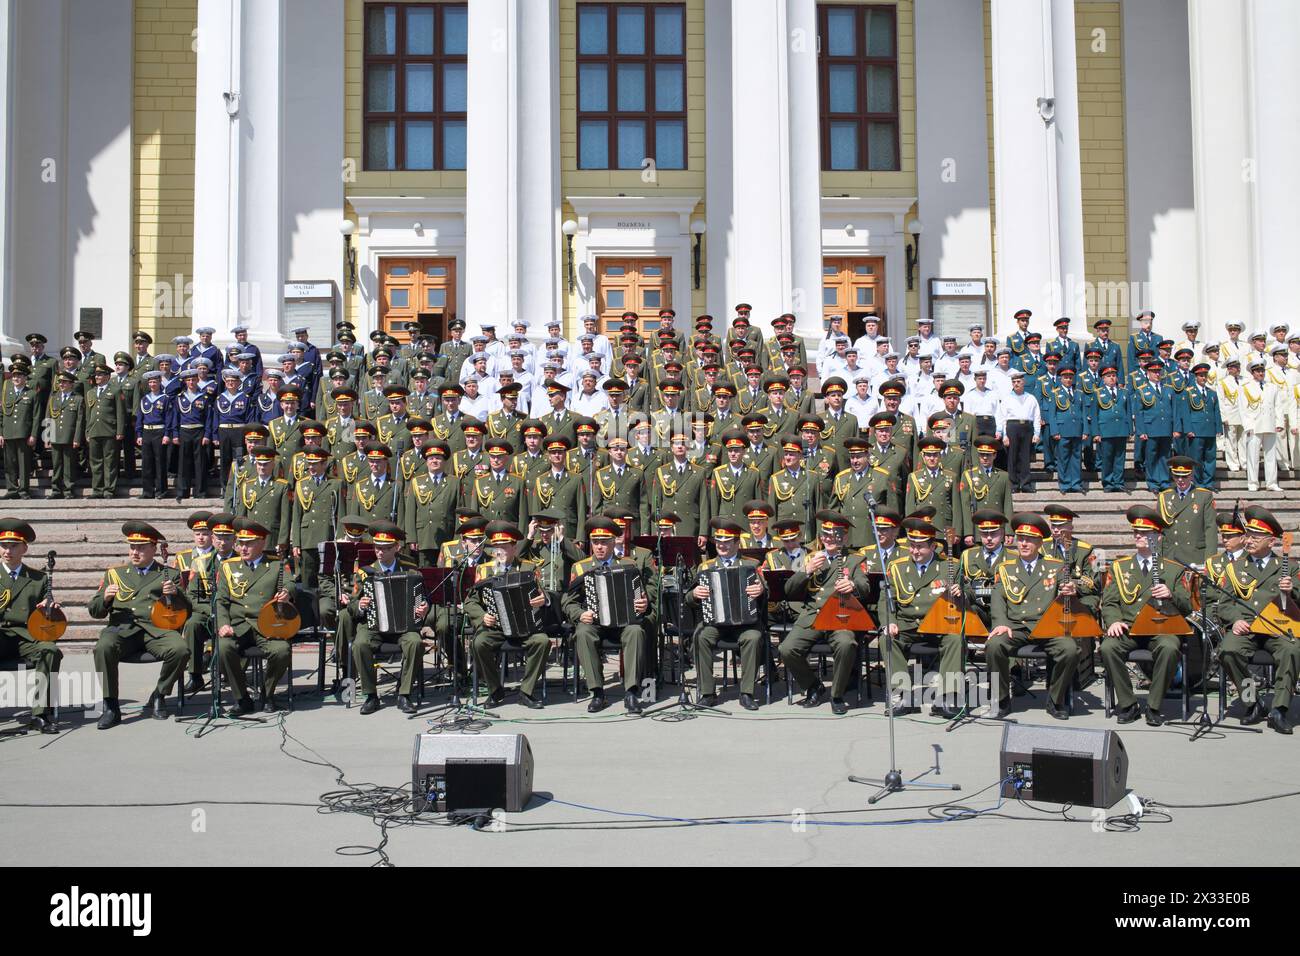 MOSKAU - 20. MAI 2014: Kombinierter Militärchor auf den Stufen des Theaters der Russischen Armee während des Rezensionswettbewerbs Song und Tanzensemble o Stockfoto